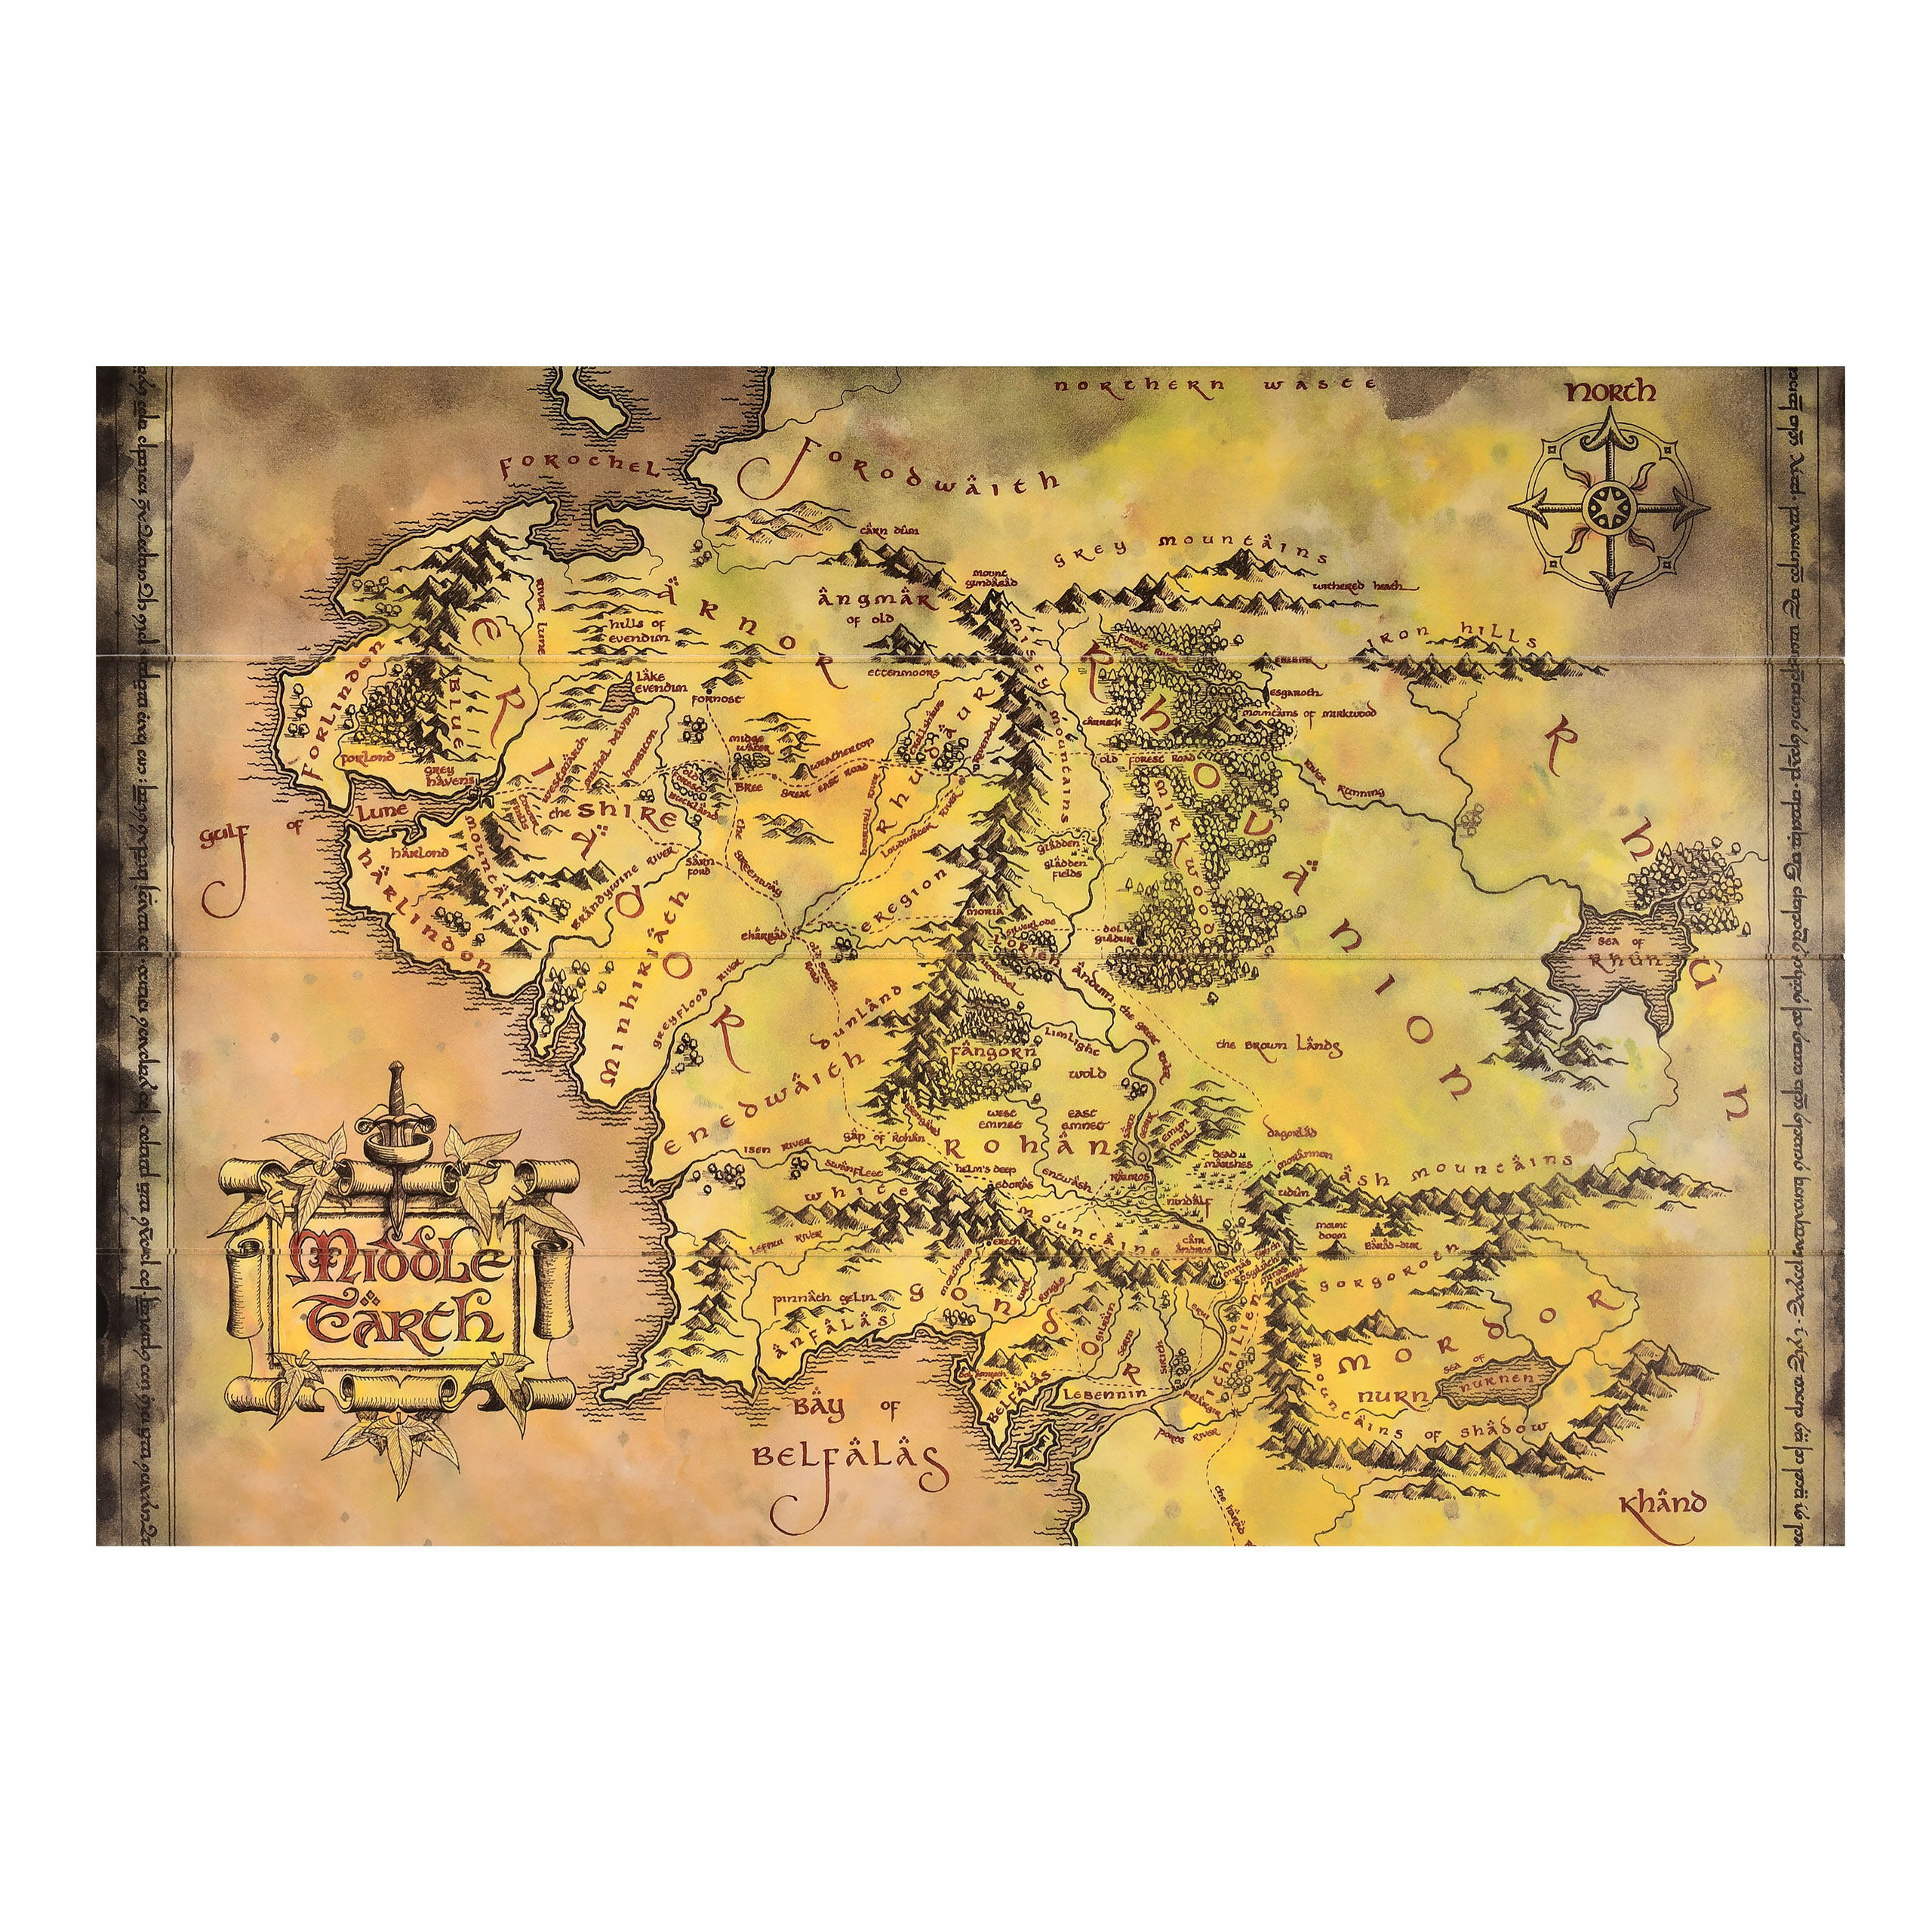 Herr der Ringe - Mittelerde Karte Wandbild Holz